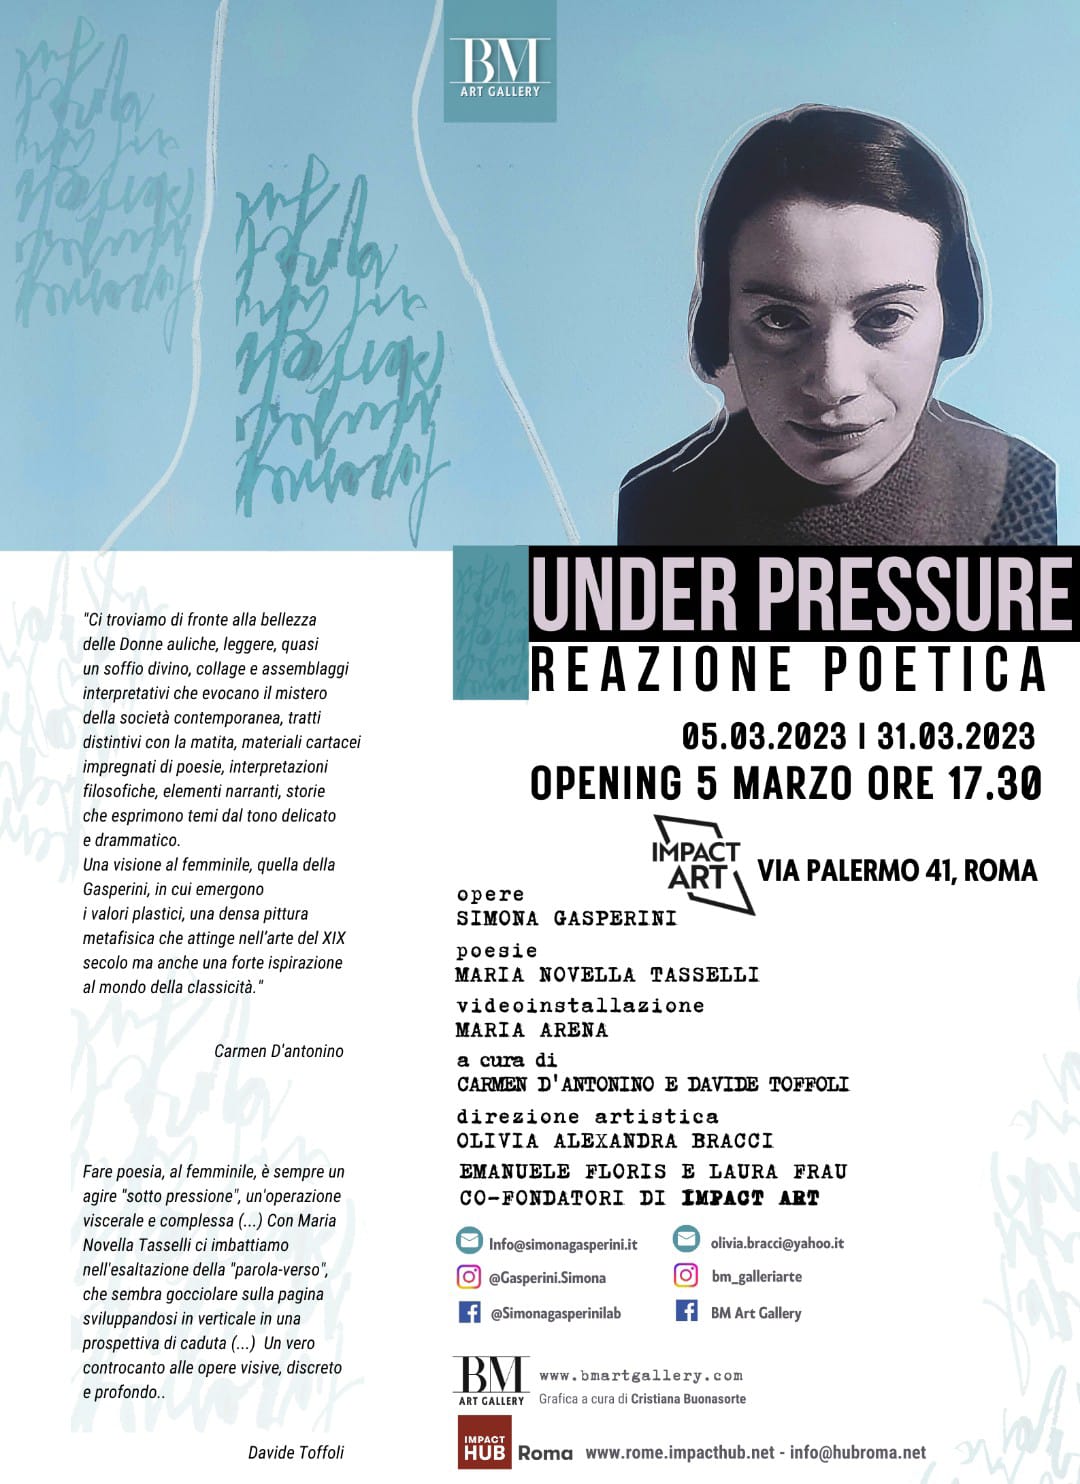 Under Pressure - Reazione Poetica dell'artista Simona Gasperini.